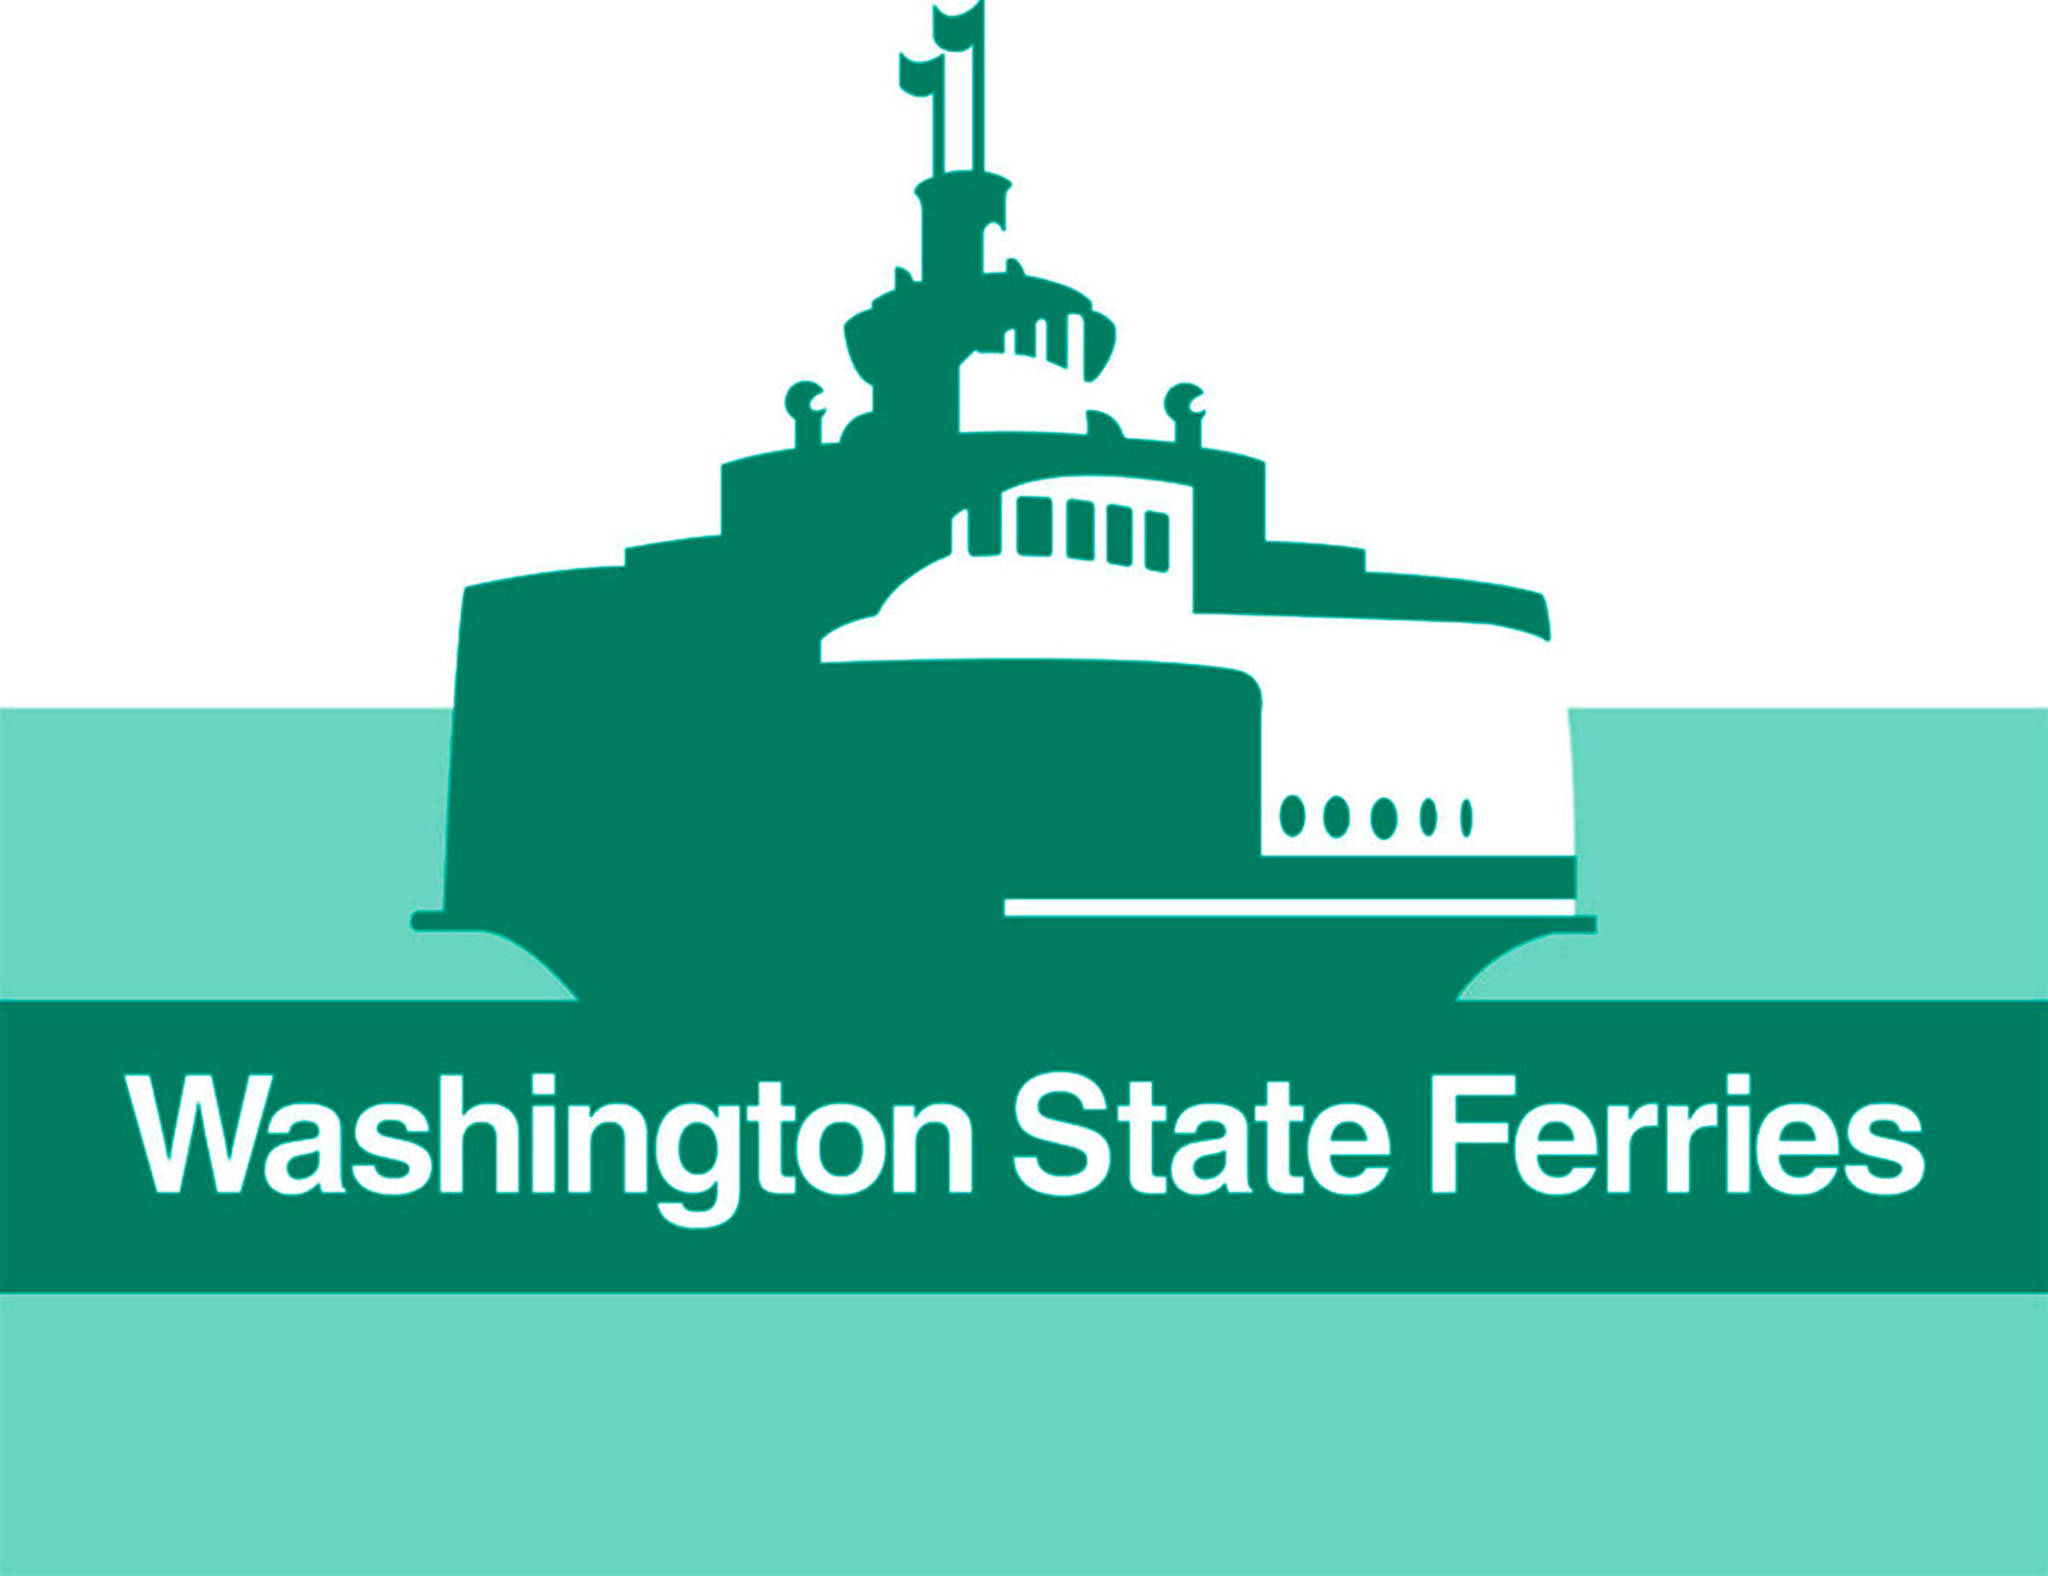 Washington State Ferries prepares final long-range plan